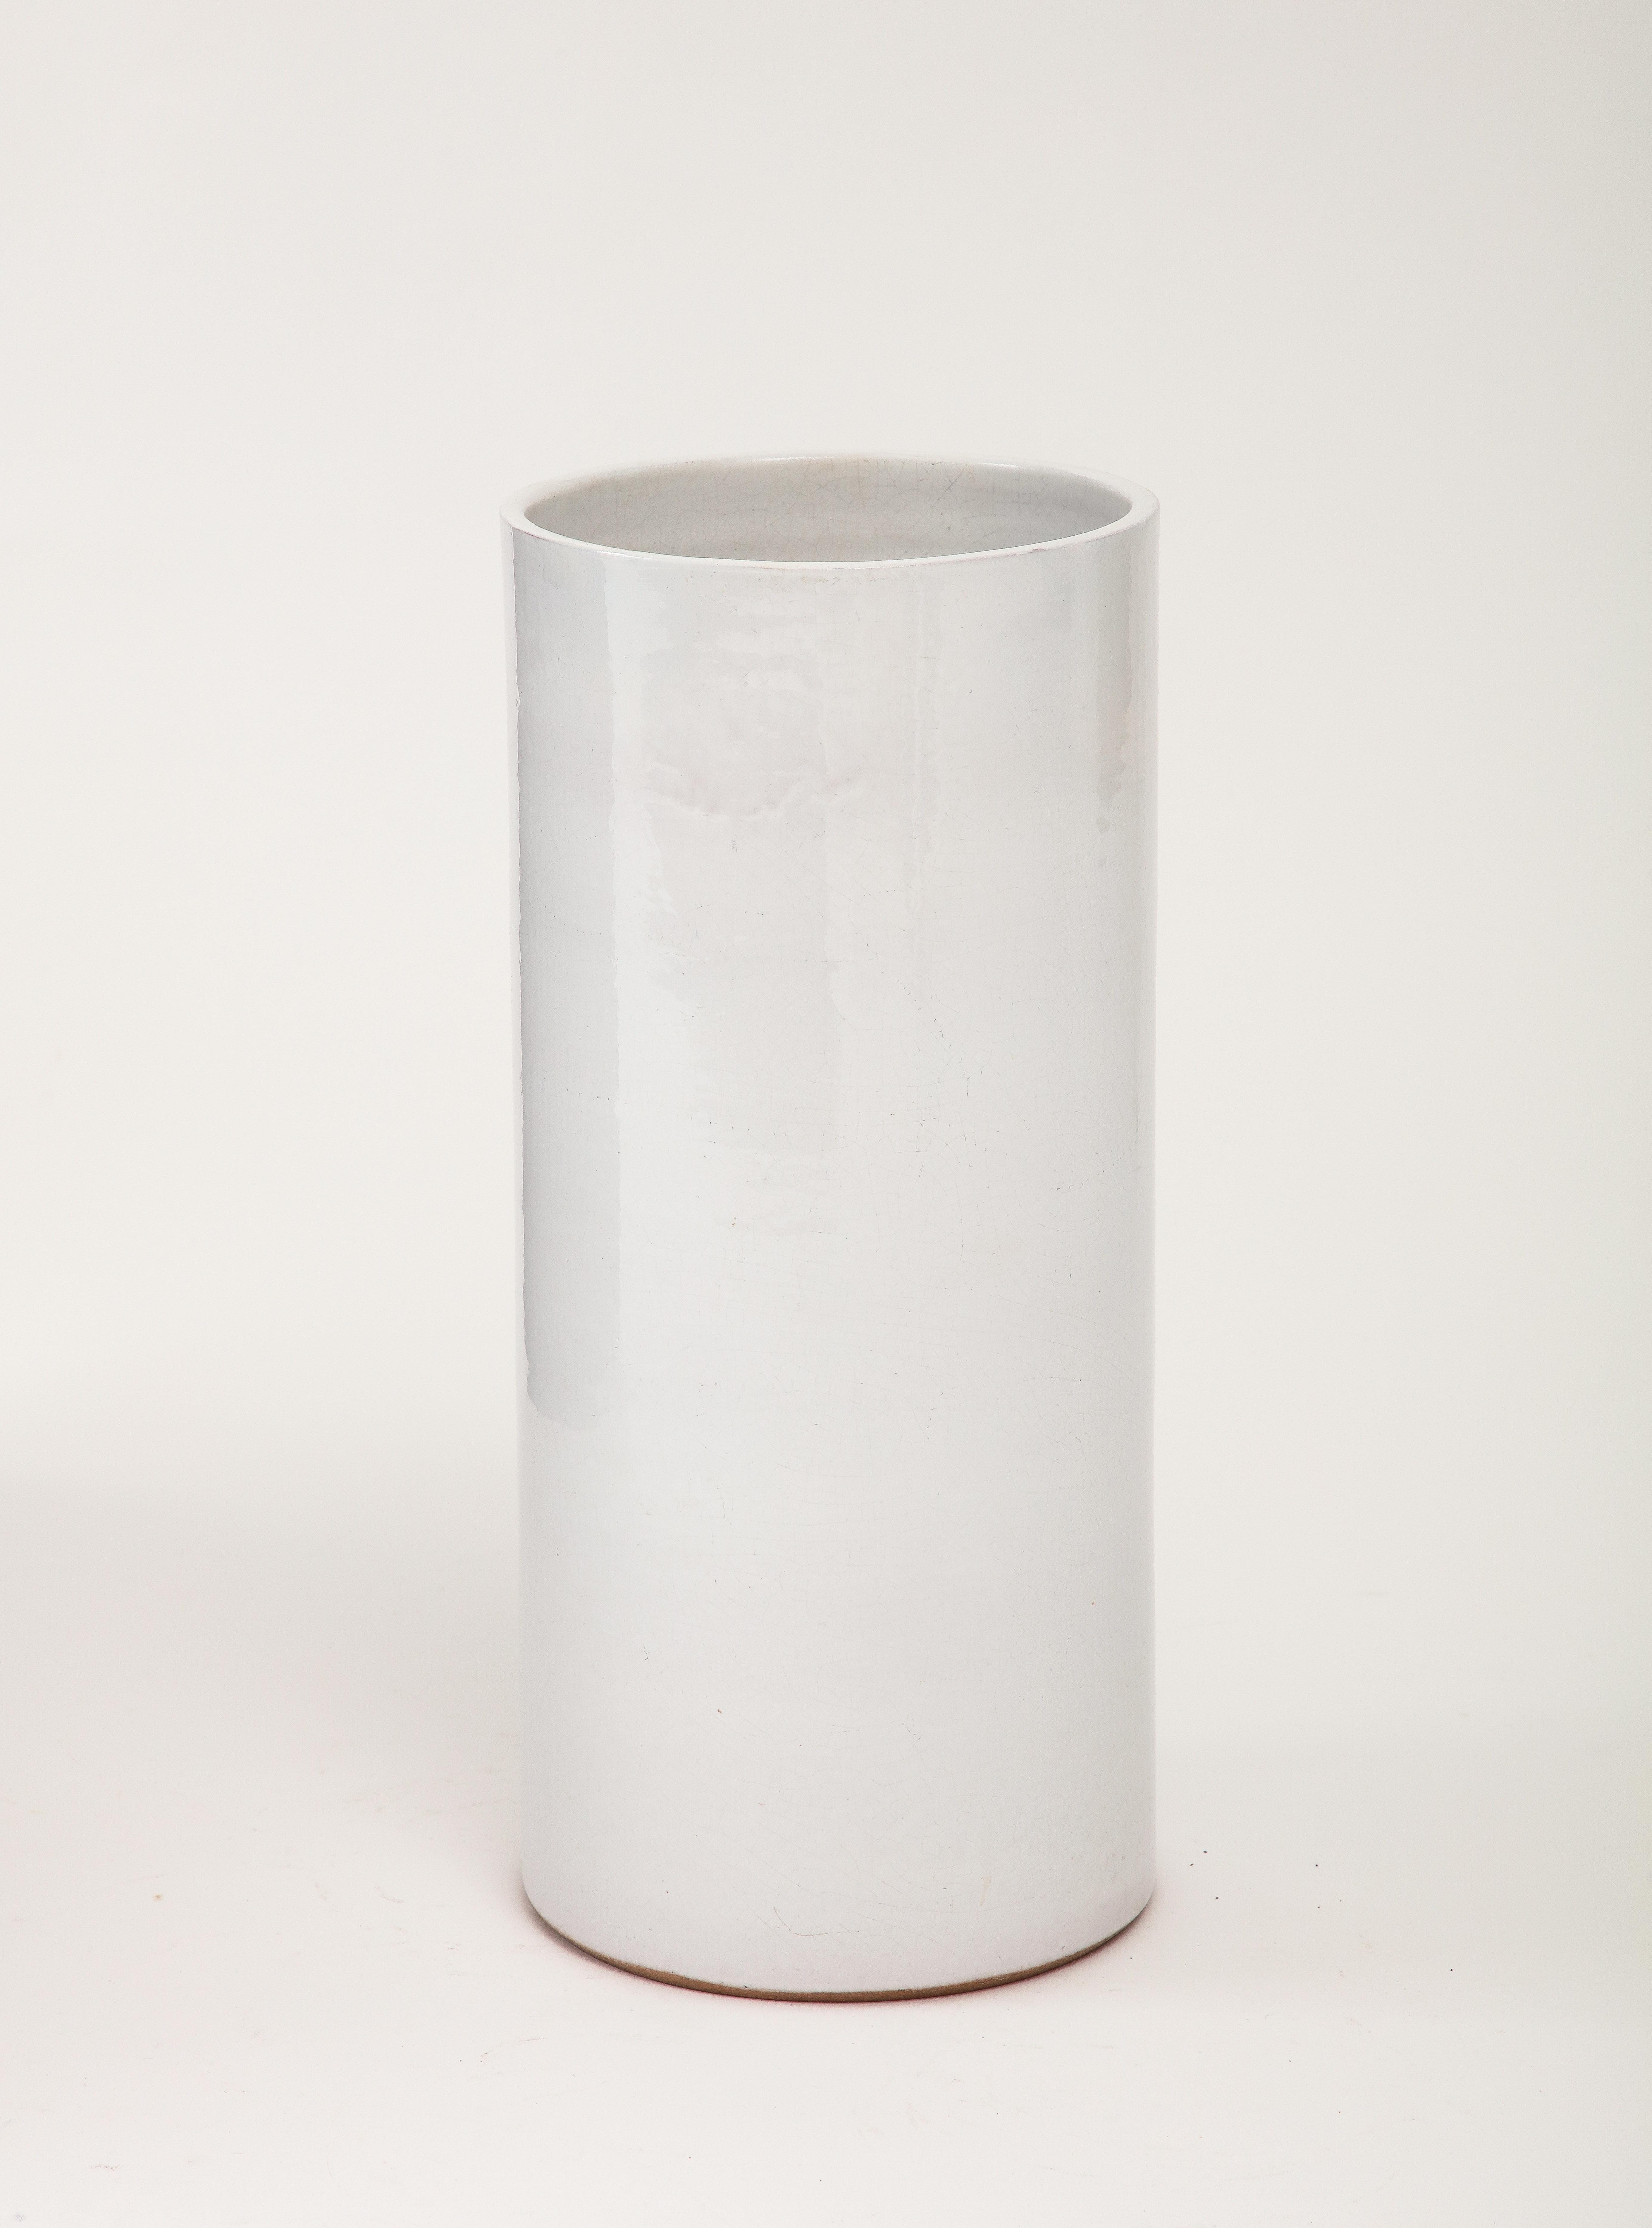 Grey White Crackle Glaze Cylindrical Vase, France, c. 1950's

Off White - Grey-white Cylinder Crackle Ceramic Vase